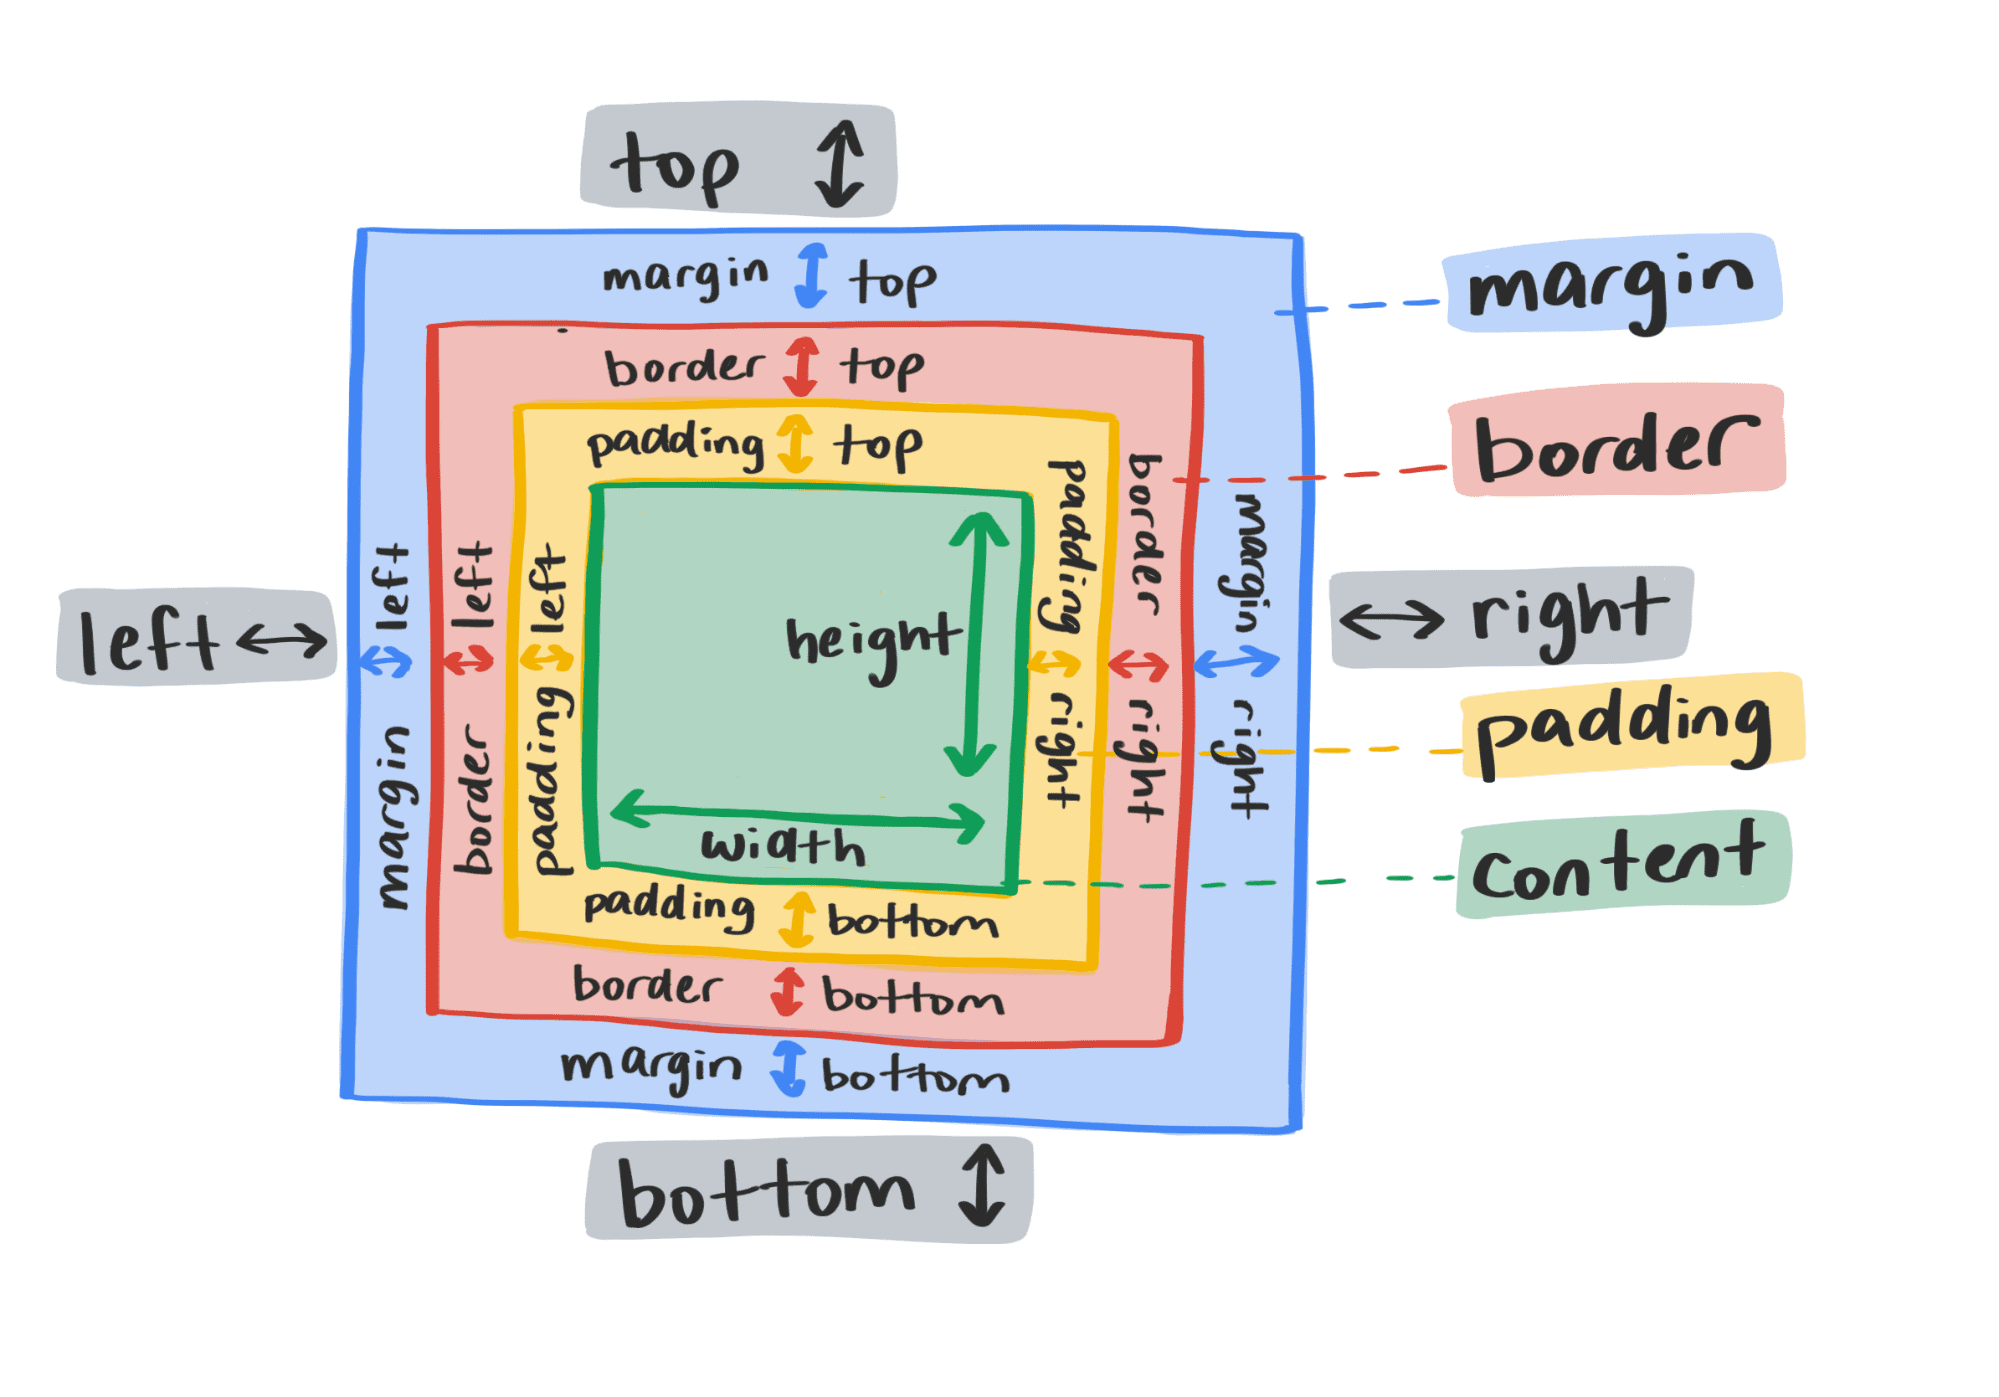 Ein Diagramm, das traditionelle CSS-Layouteigenschaften zeigt.